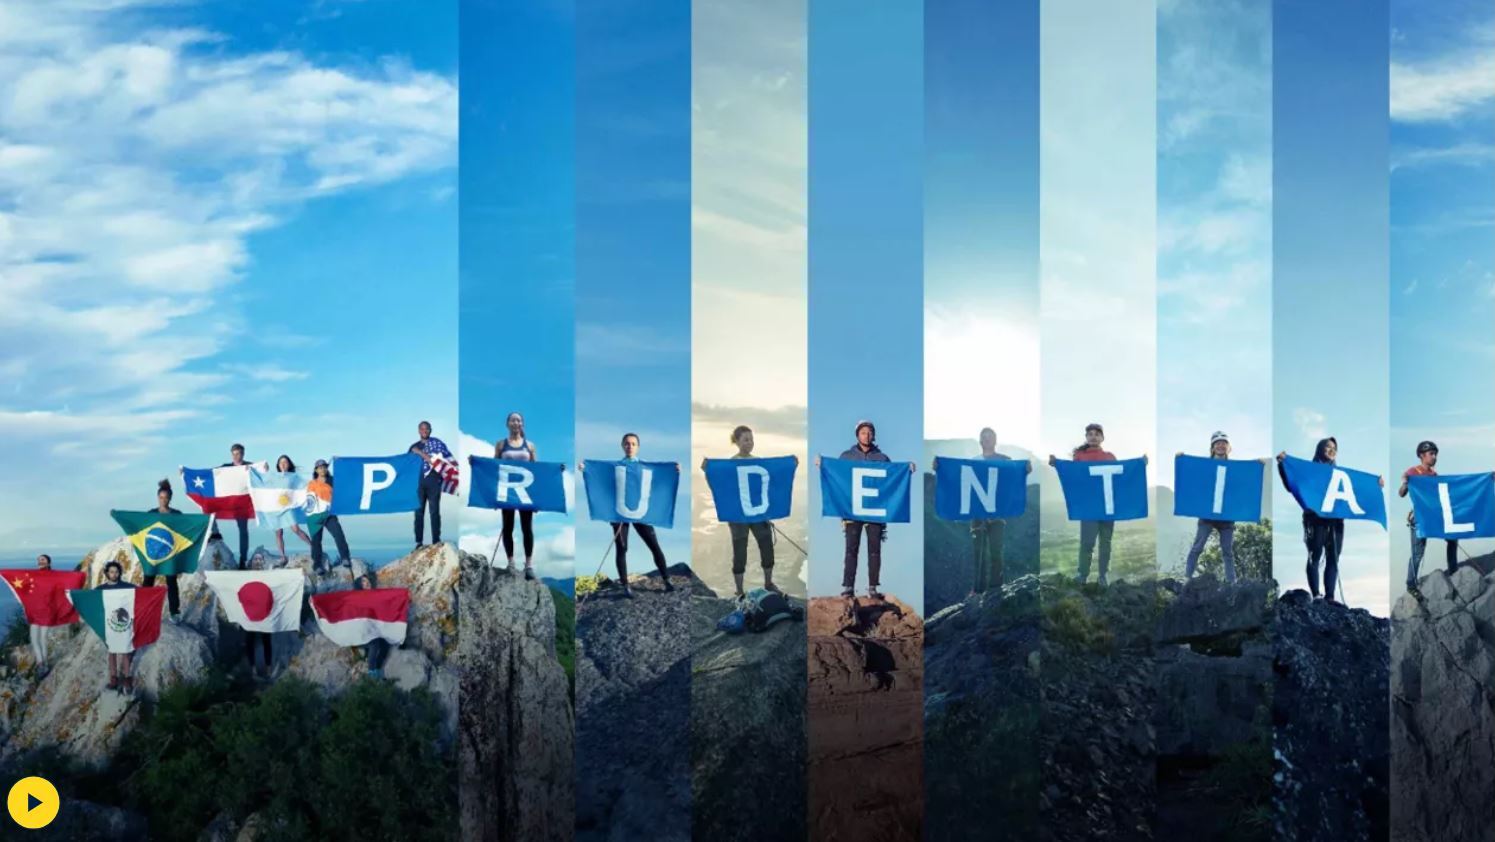 プルデンシャル・グループが
初のグローバルキャンペーンを開始　
世界的プロクライマーの動画「This is My Climb」